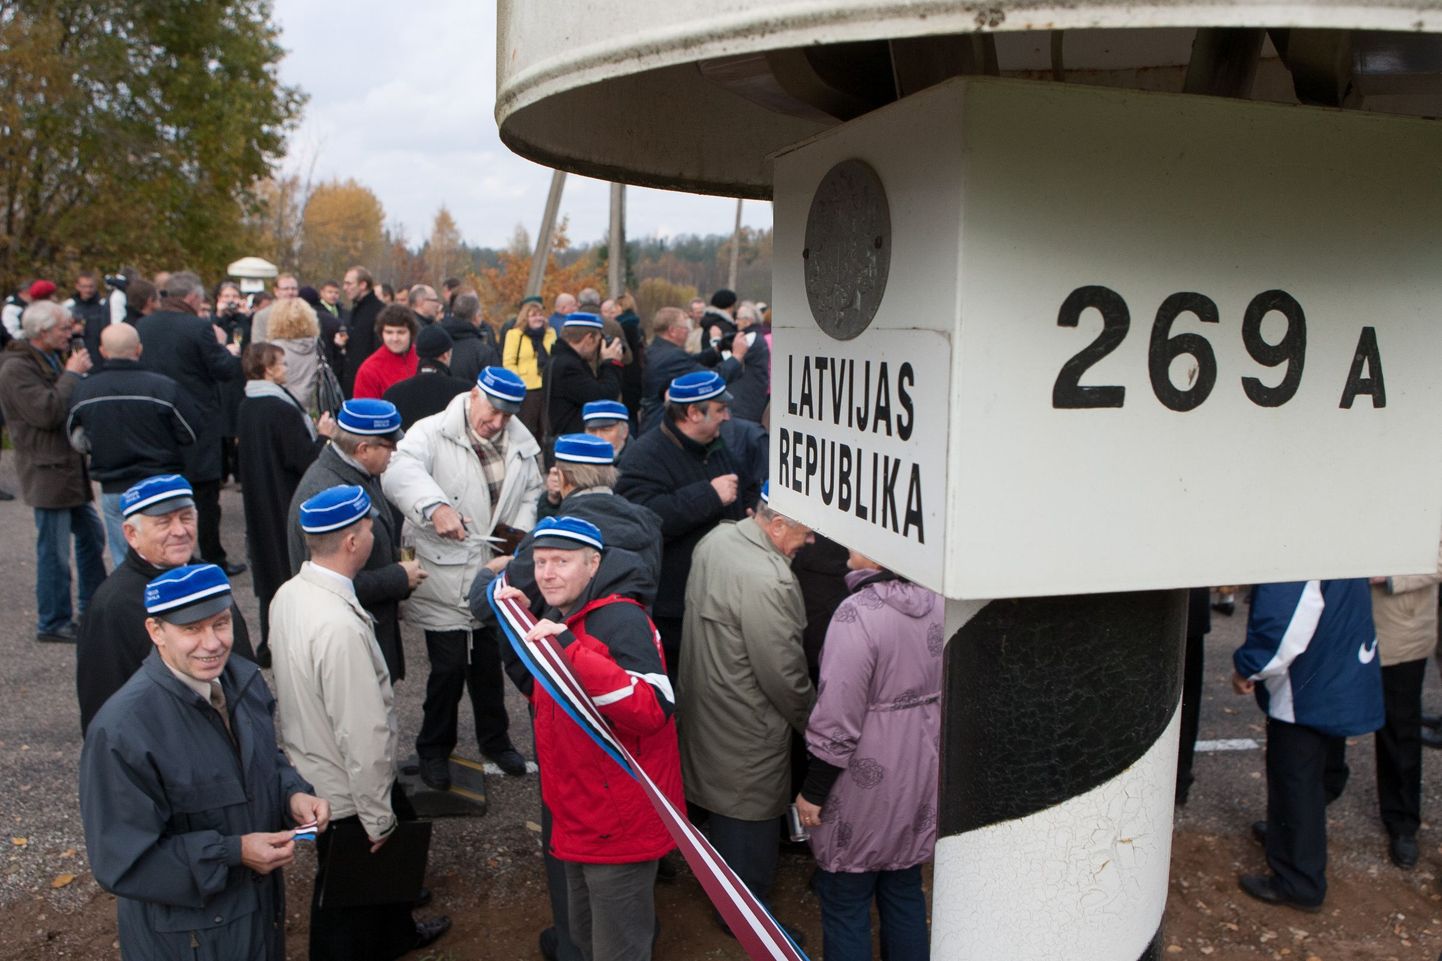 Kui sageli on Eesti või Läti tähtpäevade pidamiseks kasutatud Lilli piiripunkti, siis seekord peetakse lõunanaabrite auks pidu Karksi-Nuia kultuurikeskuses.